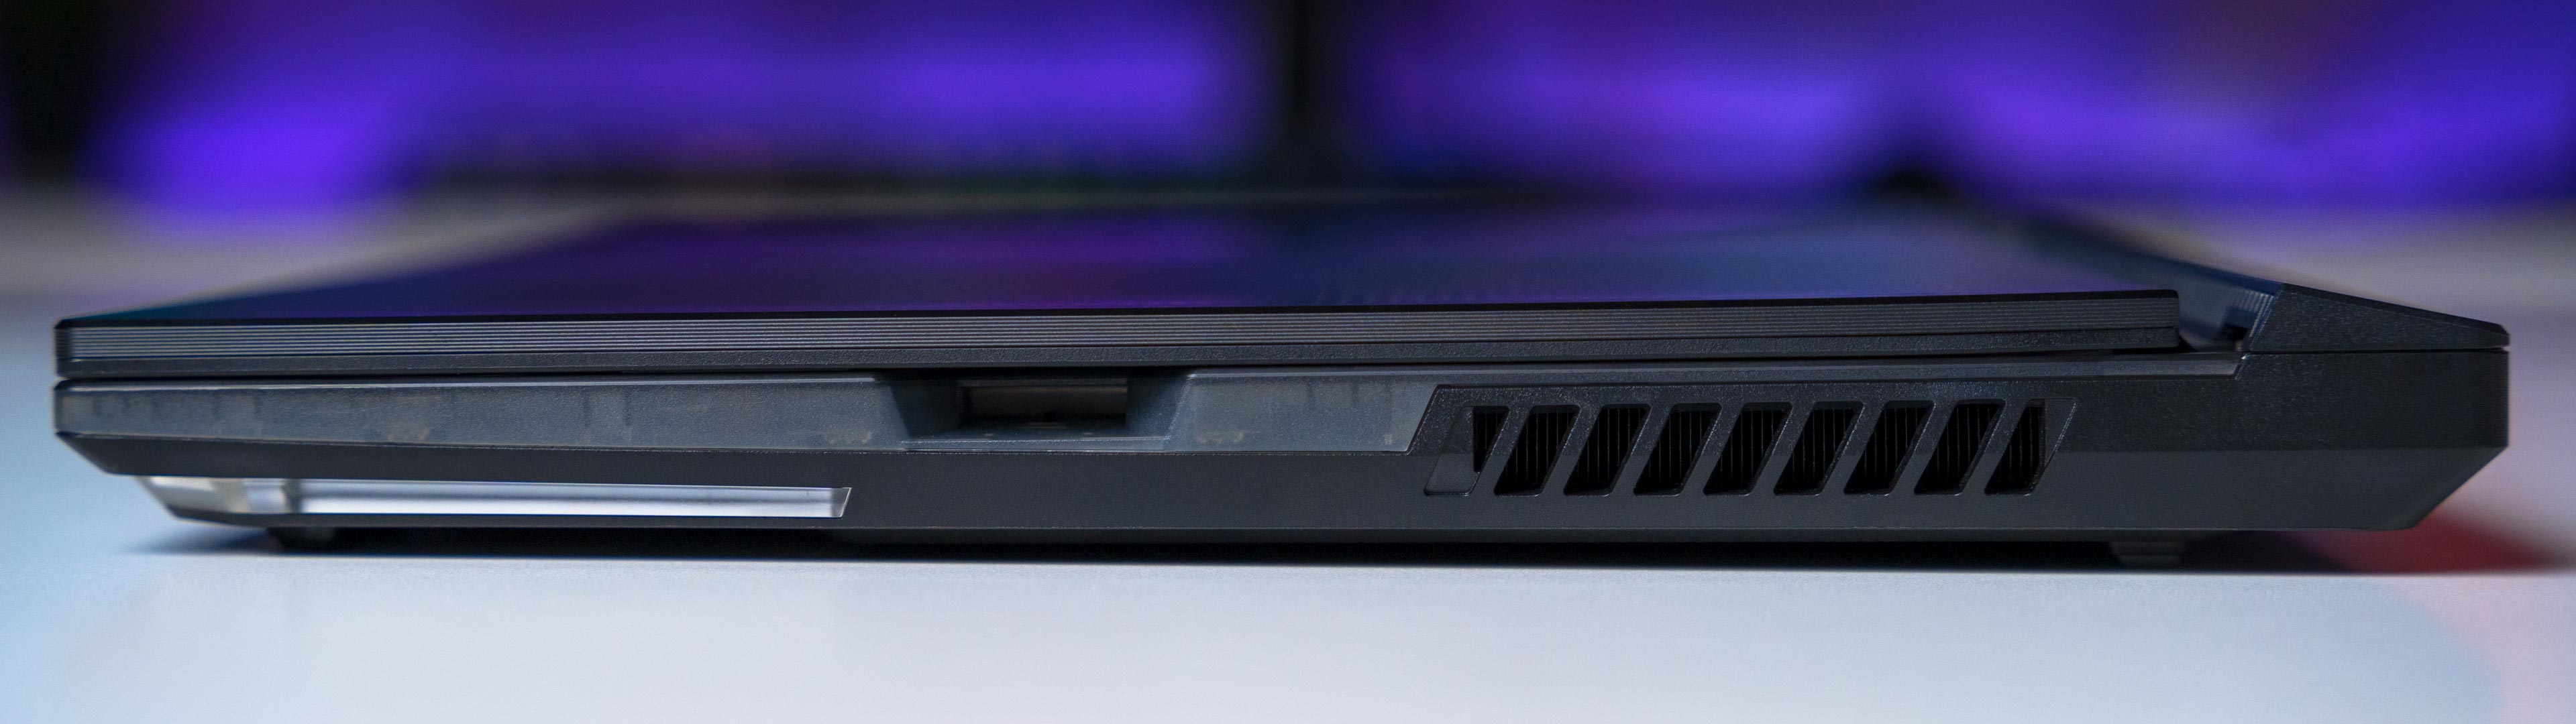 ROG Strix SCAR 15 2021 Laptop (14)